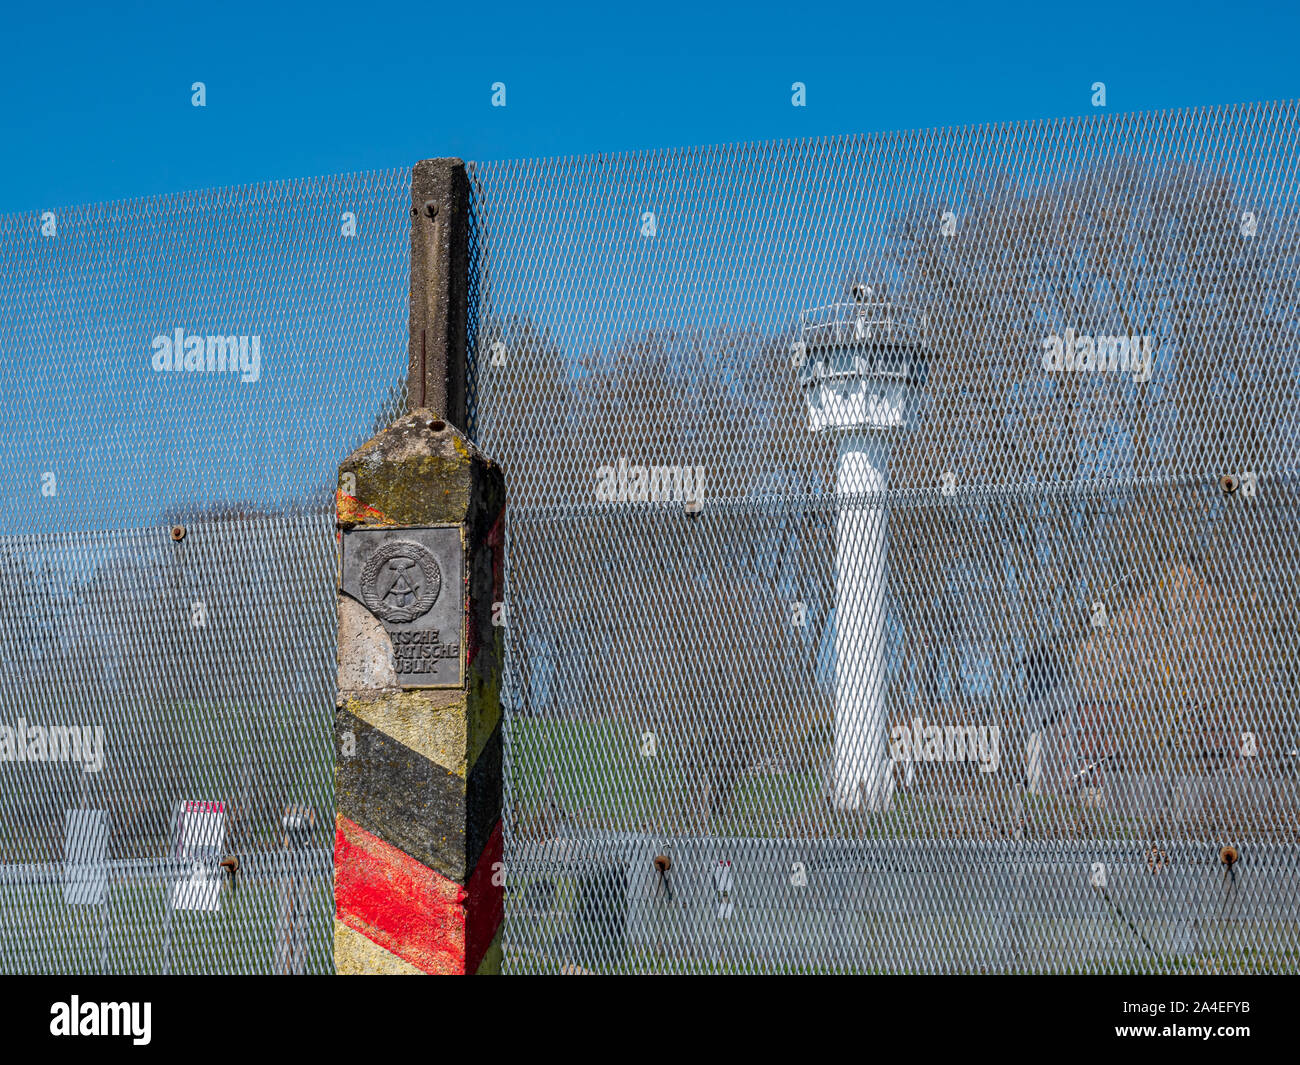 Rdt posto frontaliero di frontiera interna tedesca con torre di avvistamento Foto Stock